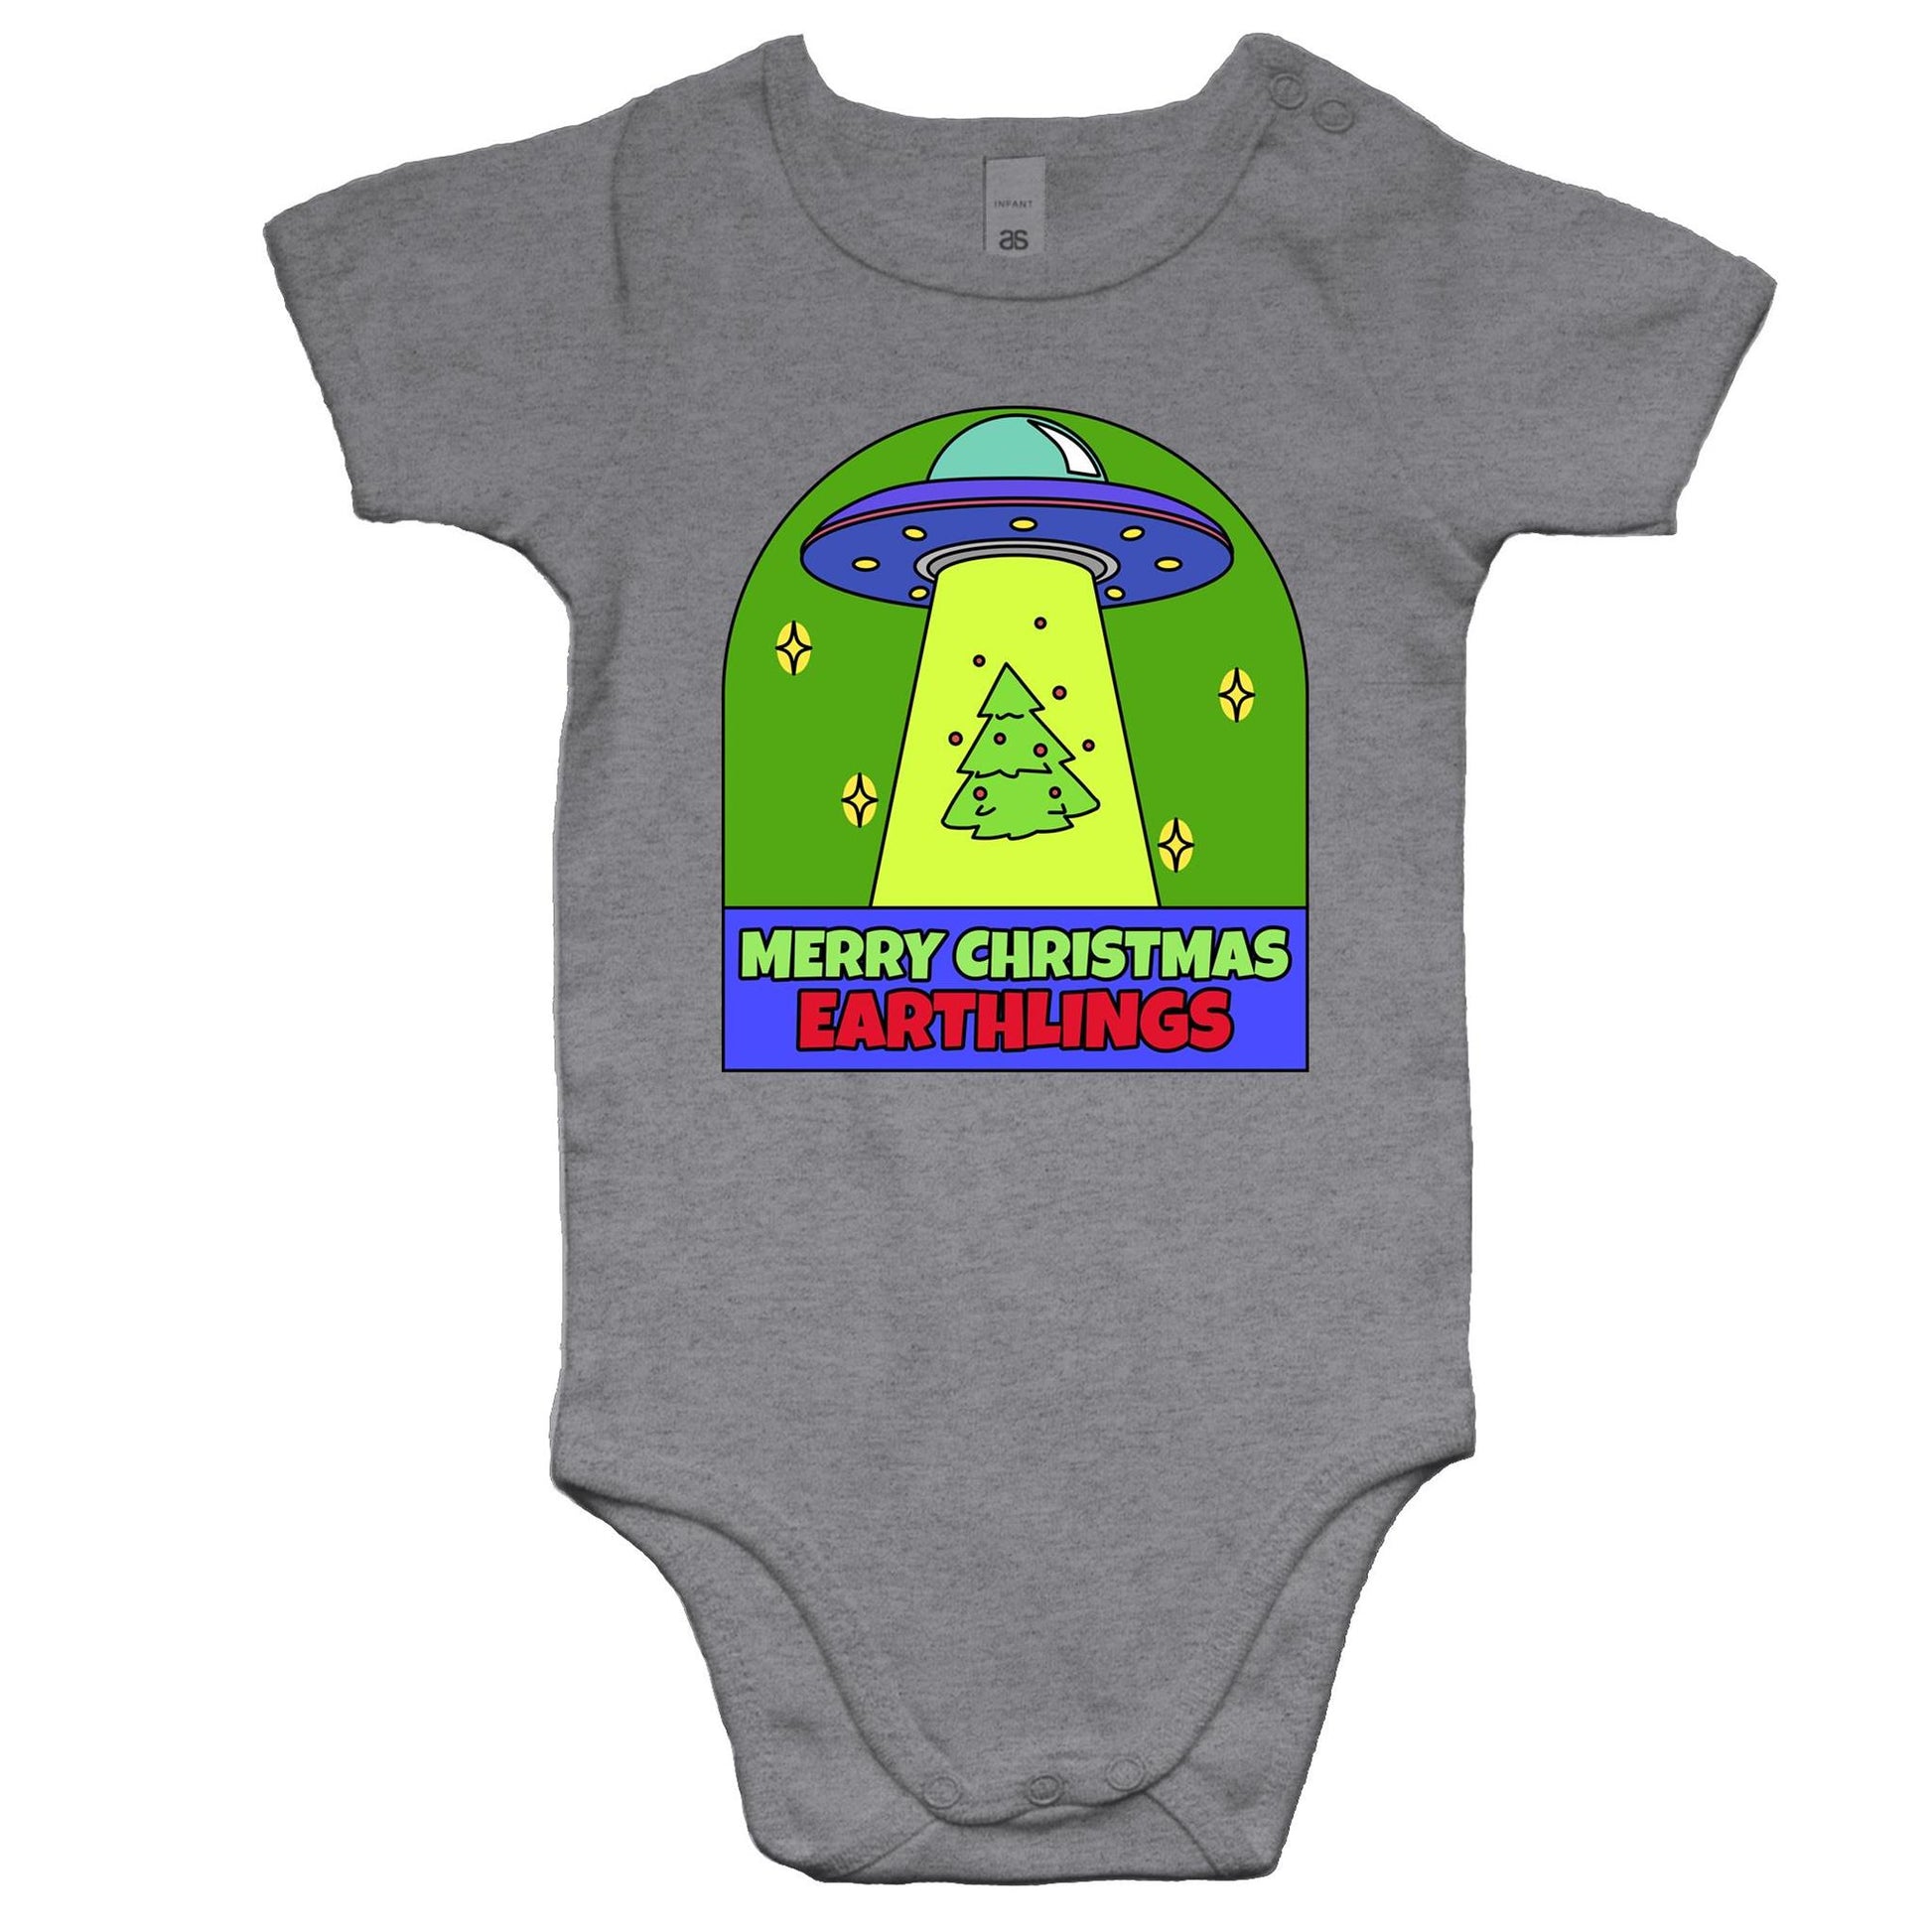 Merry Christmas Earthlings, UFO - Baby Bodysuit Grey Marle Christmas Baby Bodysuit Merry Christmas